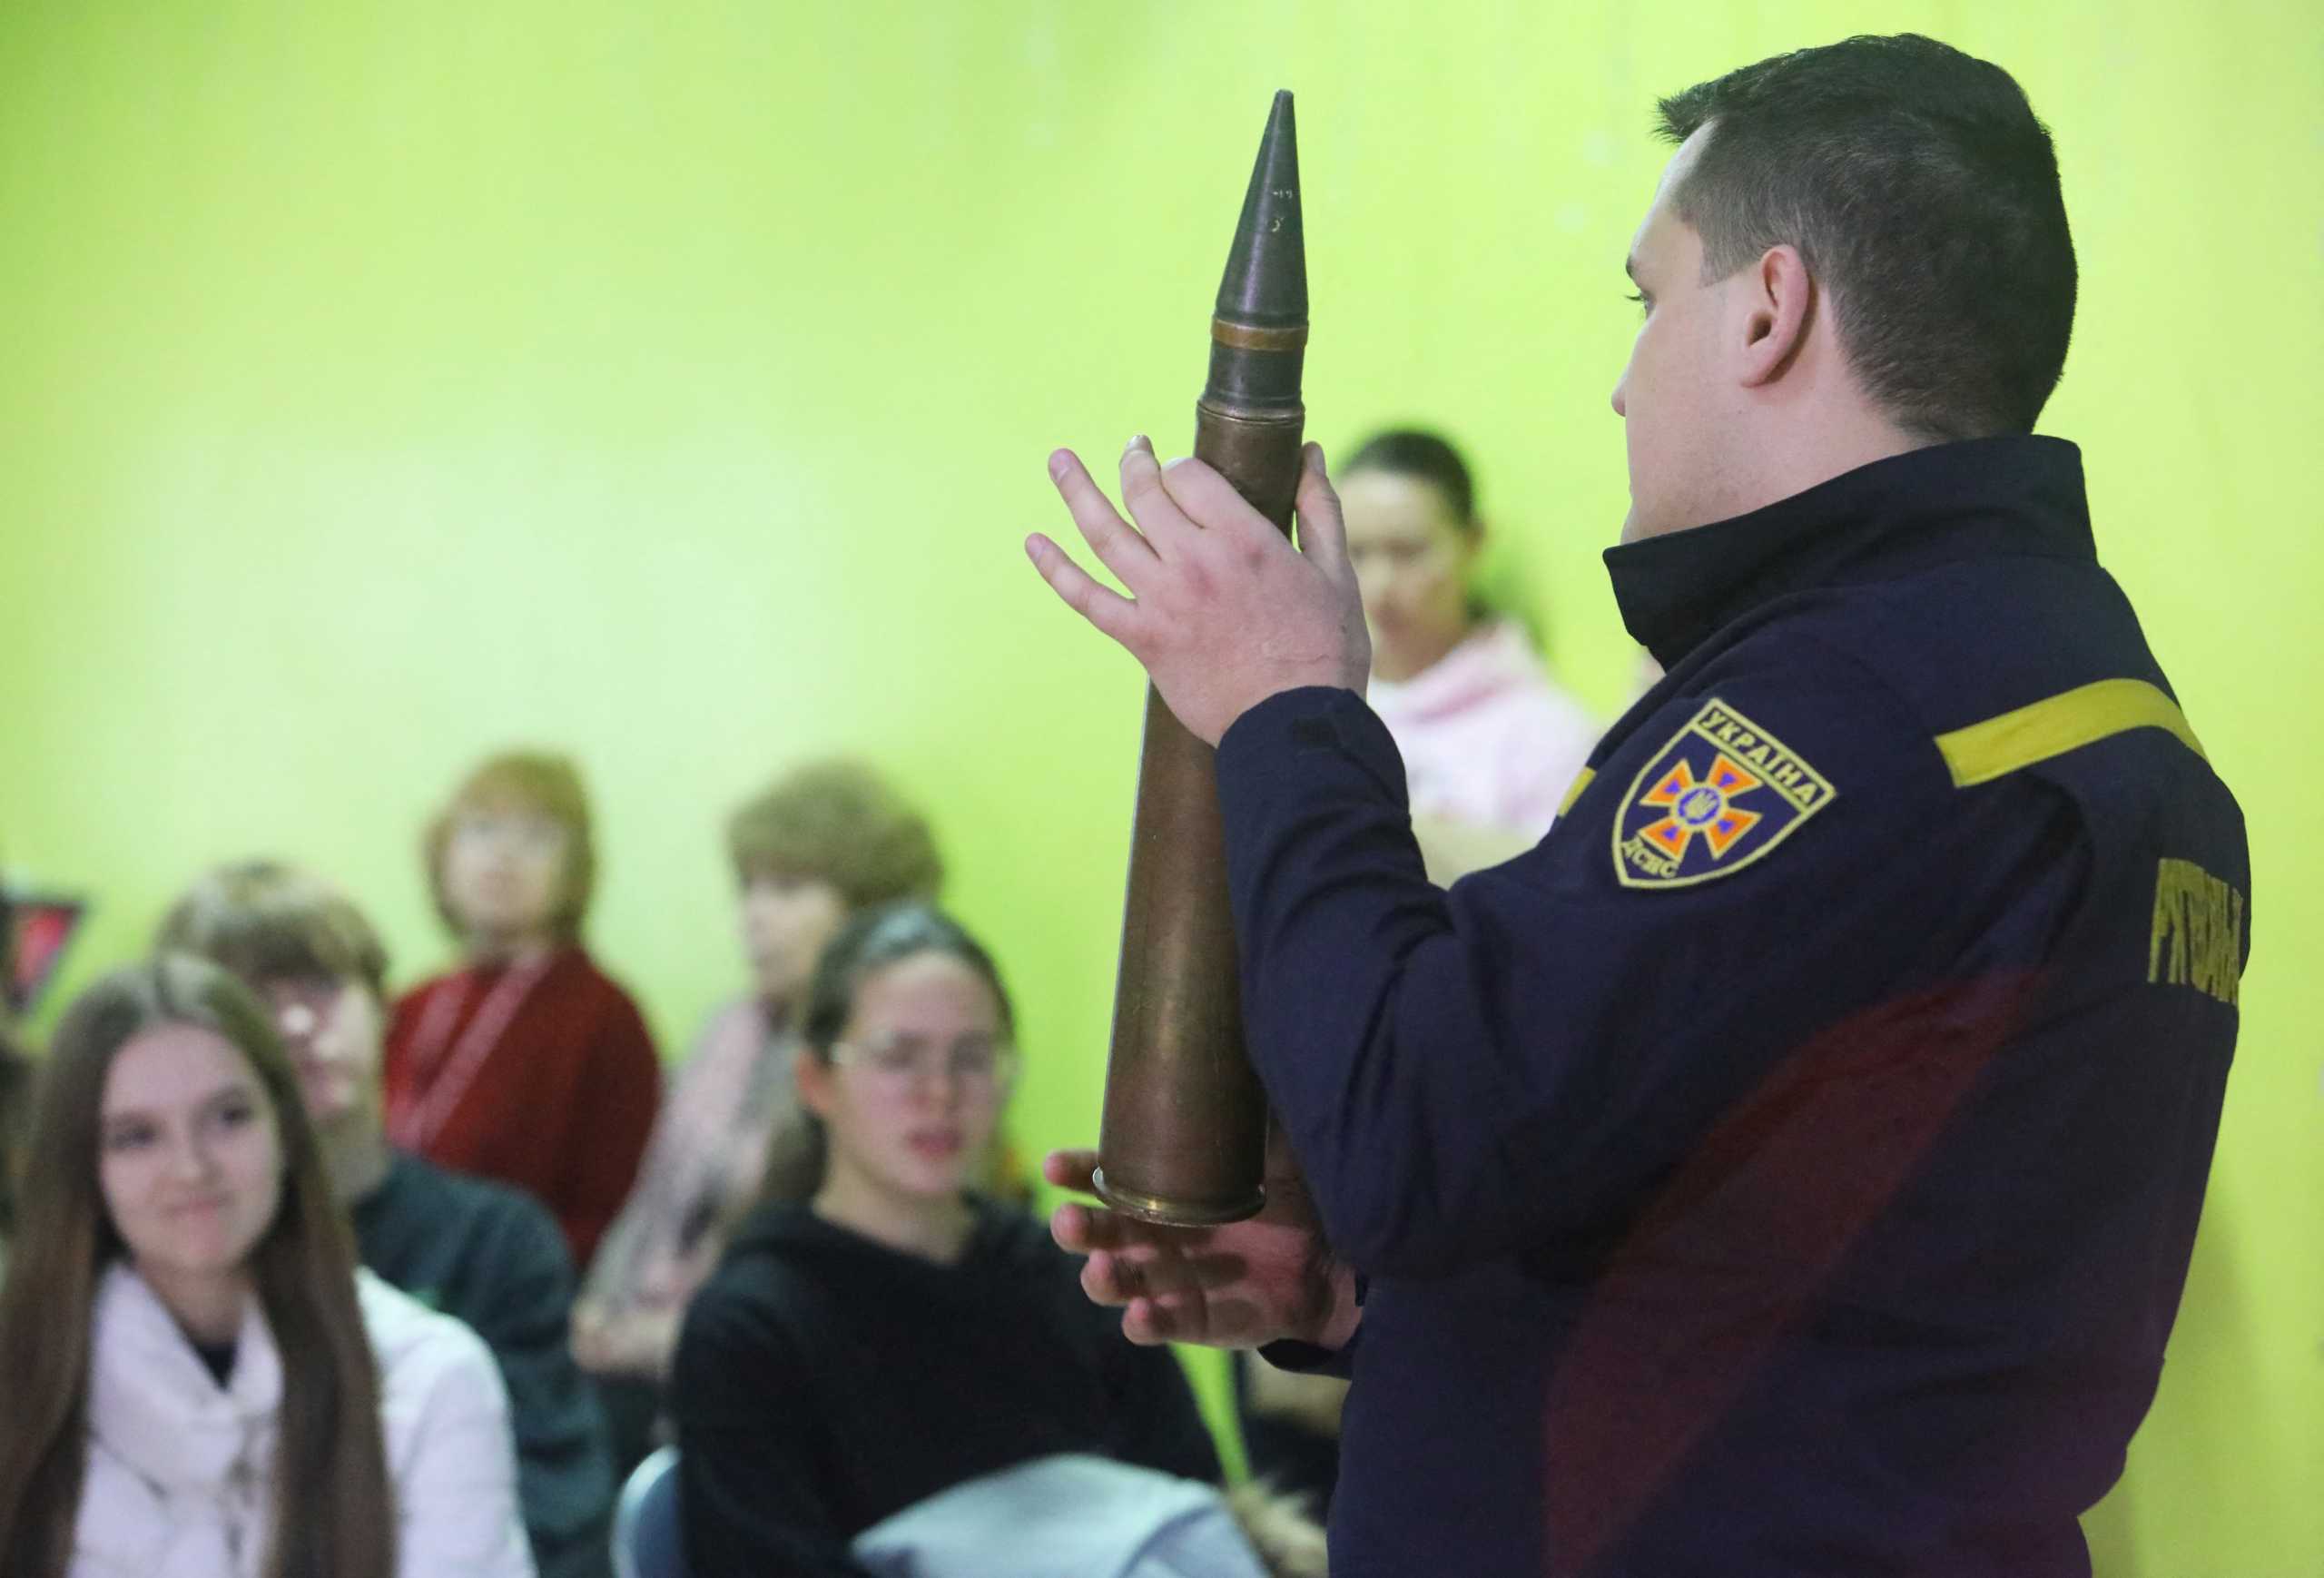 Ουκρανία: Μαθητές κάνουν ασκήσεις με αλεξίσφαιρα γιλέκα και εκρηκτικά